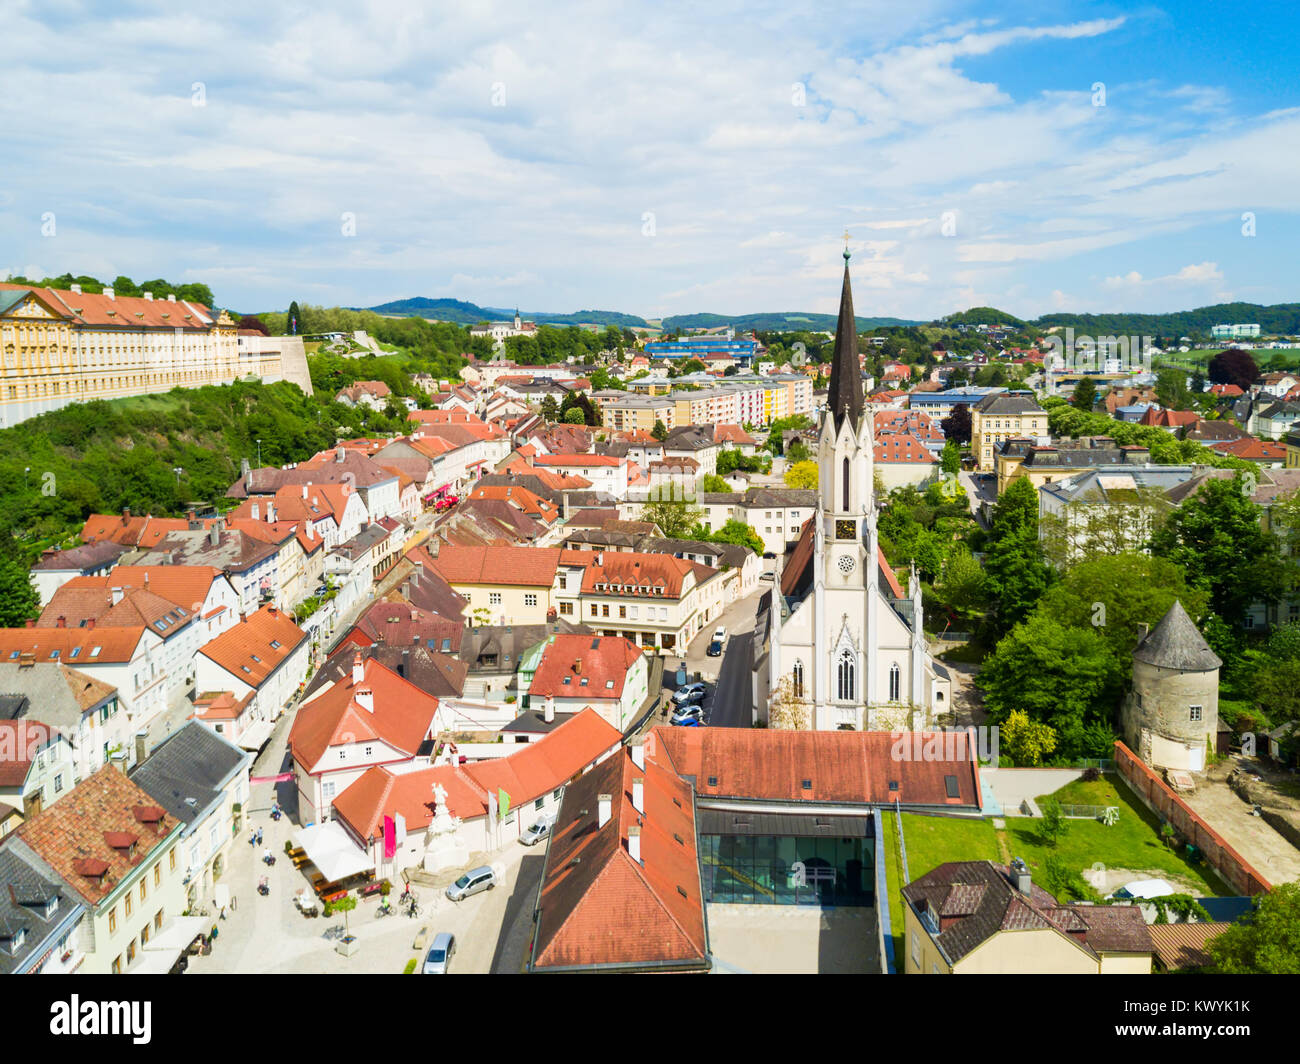 Église Stadtpfarrkirche ou église paroissiale ville vue panoramique aérienne, Melk centre-ville. Melk est une ville dans la vallée de la Wachau en Basse-Autriche. Banque D'Images